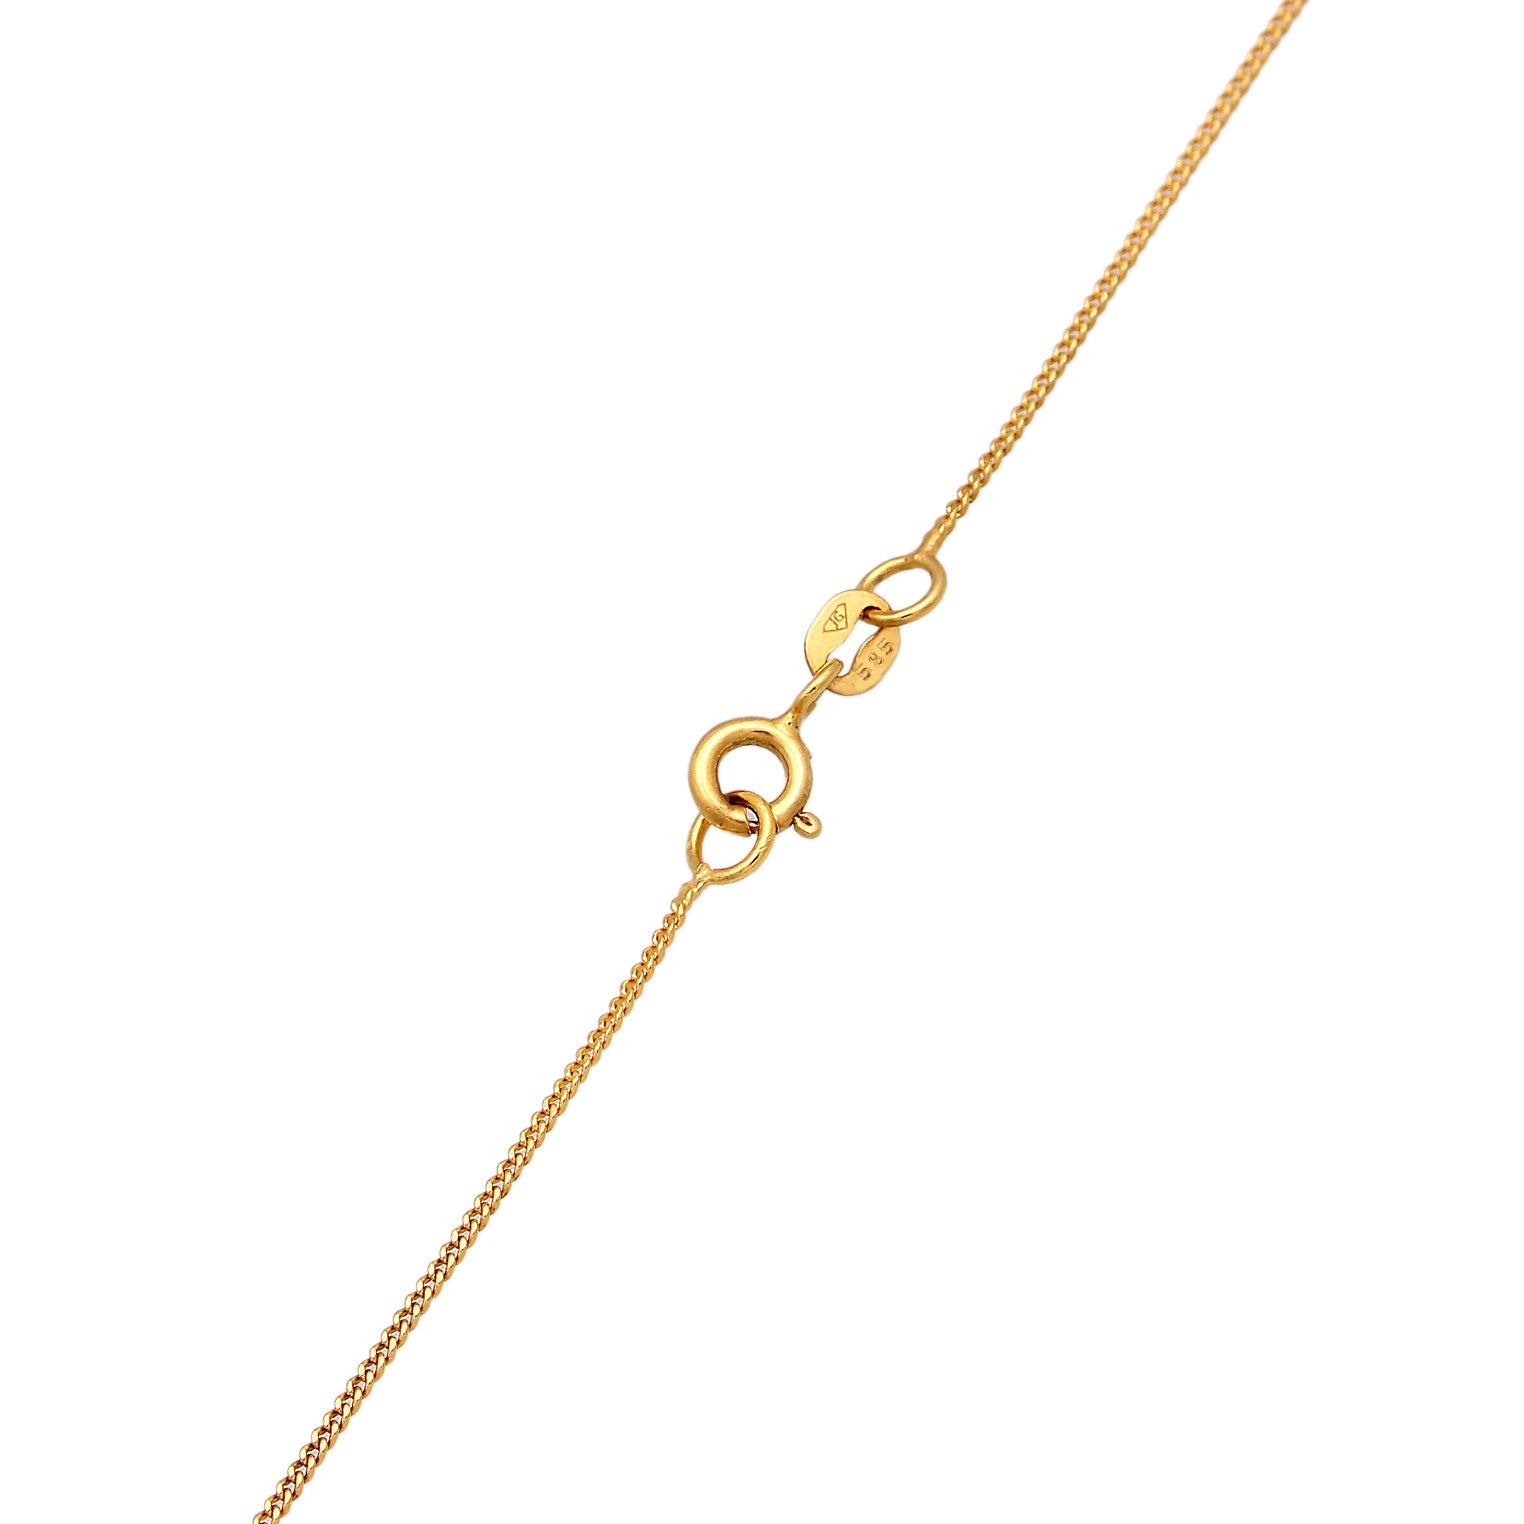 Gold - Elli PREMIUM | Granat Topas Klassik Elegant 585 Gelbgold